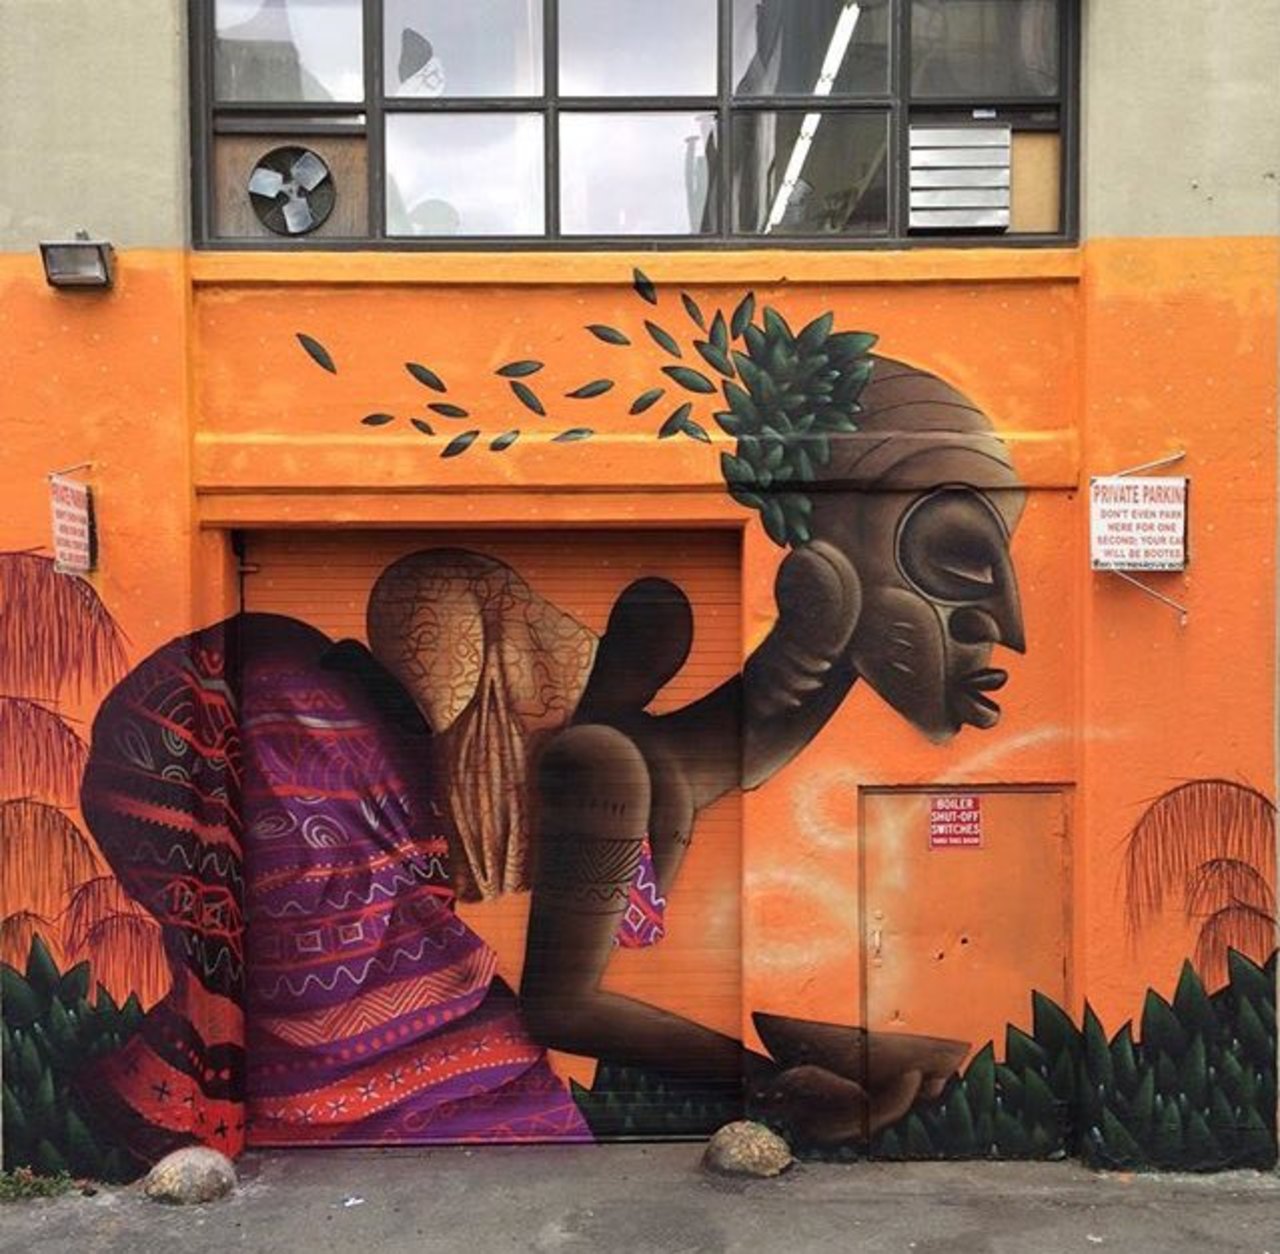 RT @GoogleStreetArt "New Street Art by Alexandre Keto in #NYC 
#graffiti #streetart https://t.co/B5feLv04F3"